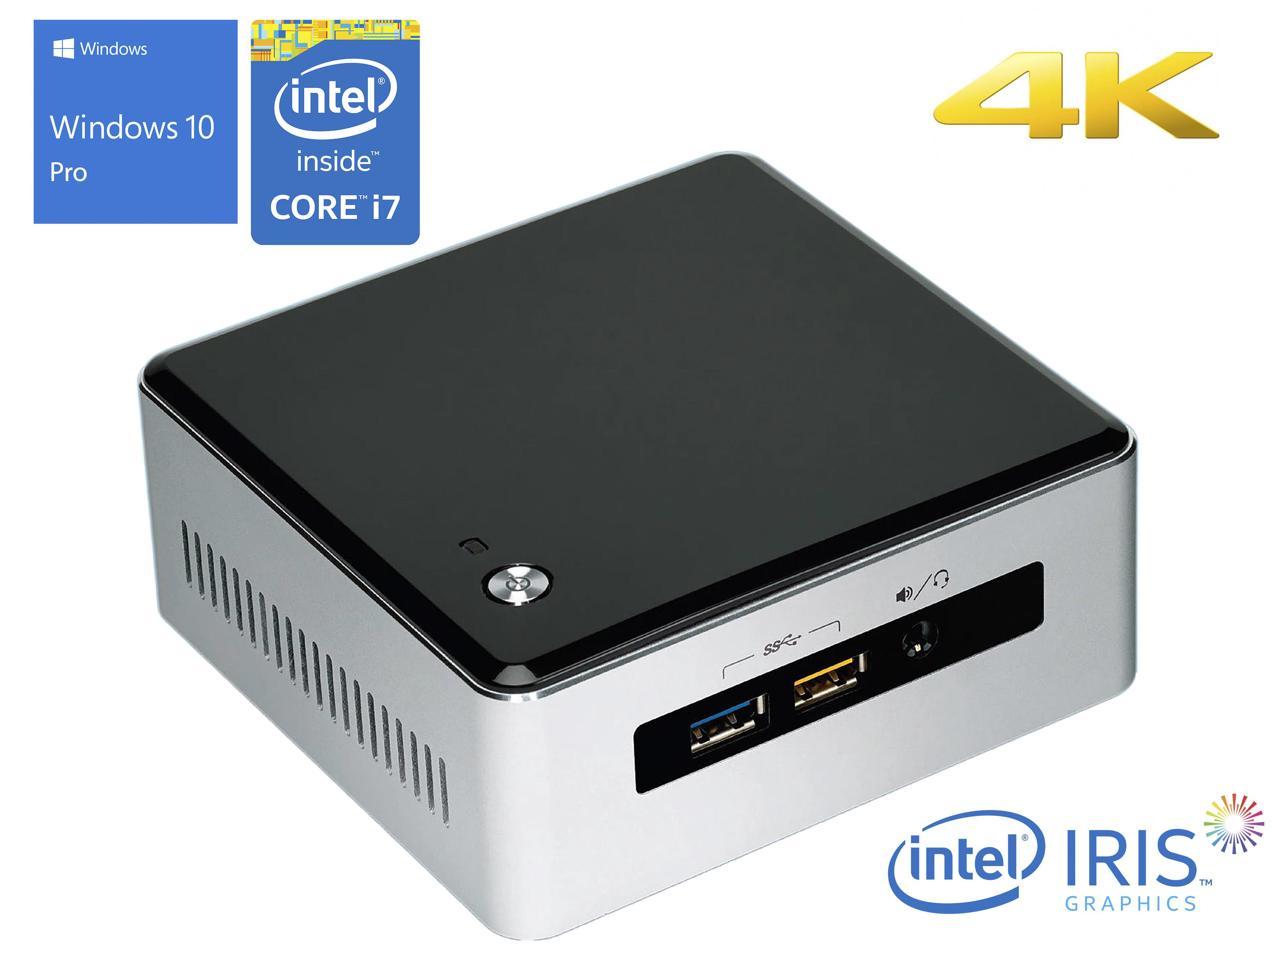 Intel NUC5i7RYH Mini PC, Intel Core i7-5557U Upto 3.40GHz, 8GB RAM, 512GB NVMe SSD + 1TB HDD, Mini HDMI, Mini DisplayPort, Wi-Fi, Bluetooth, Windows 10 Pro